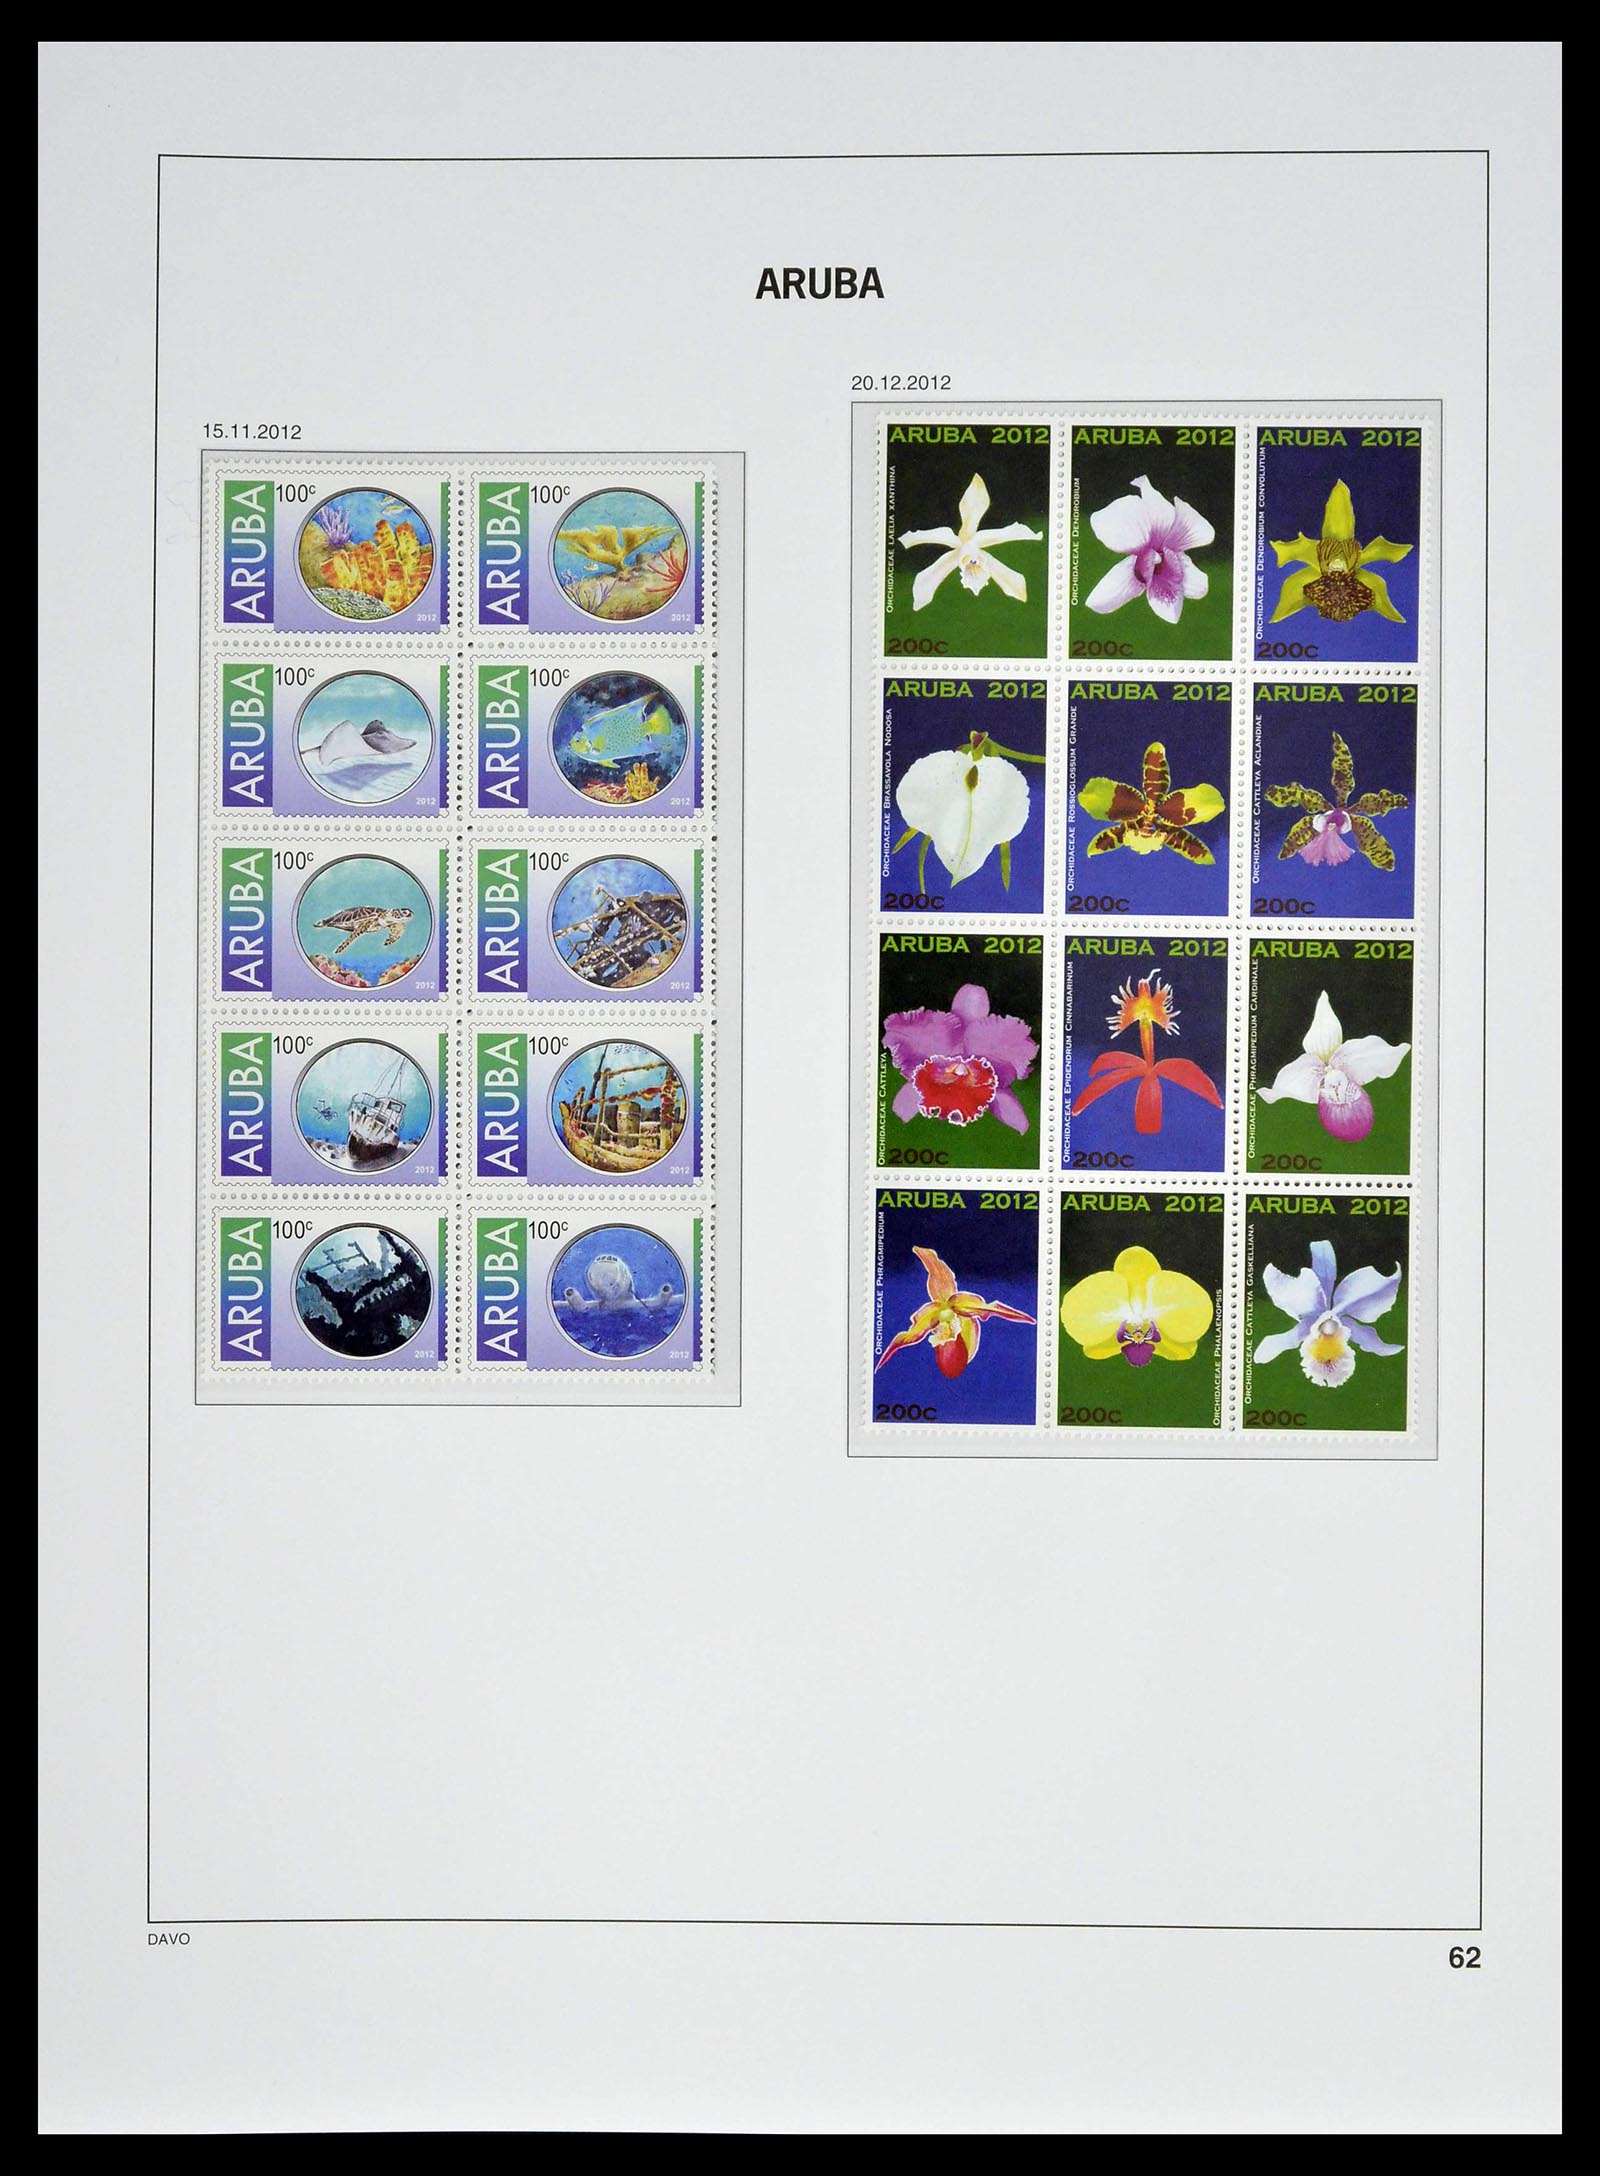 39361 0062 - Stamp collection 39361 Aruba 1986-2013.